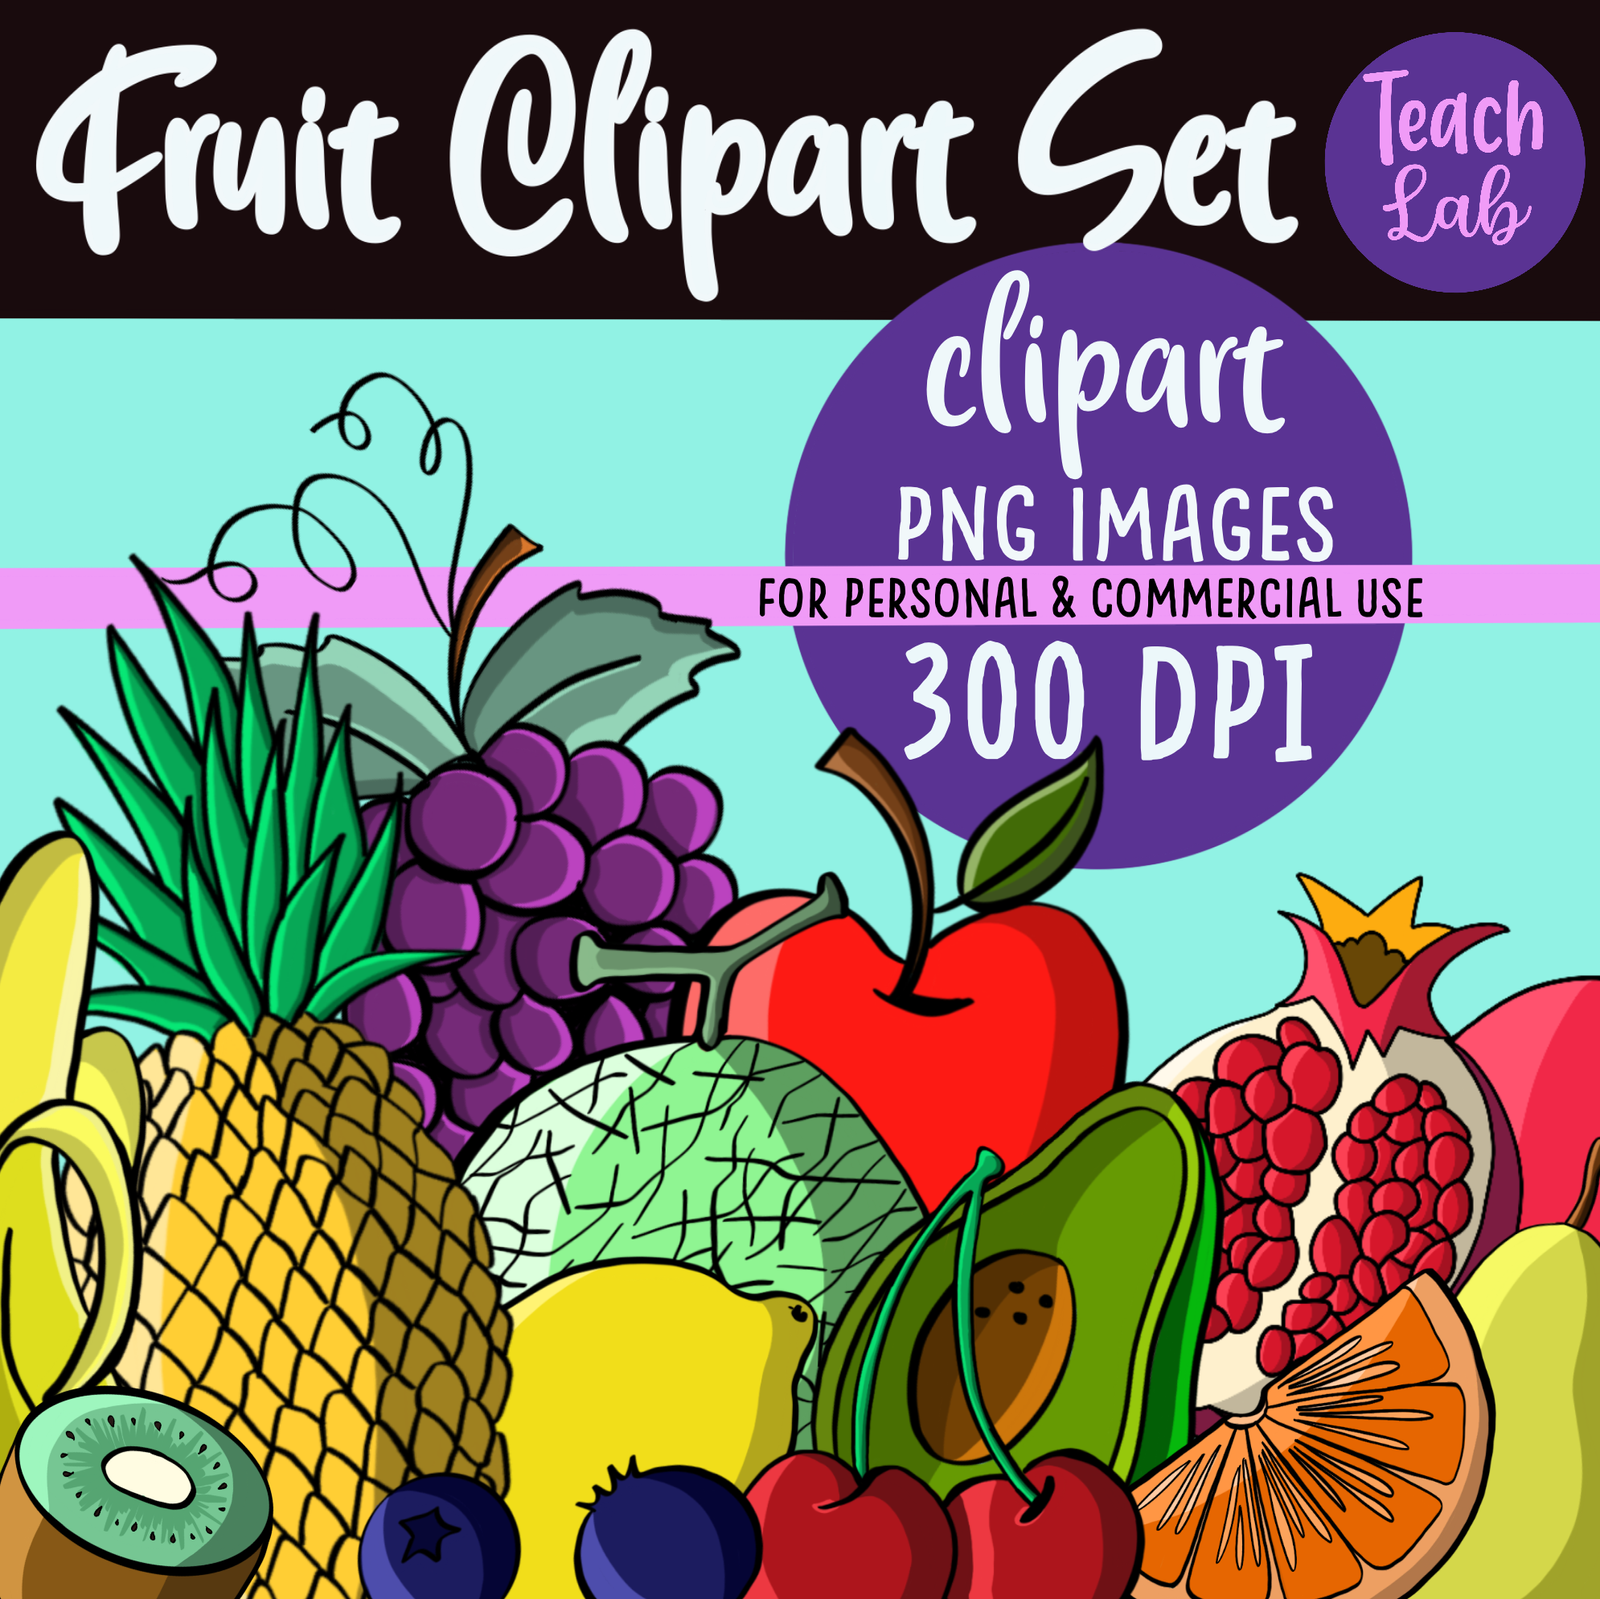 Colourful fruit clipart set advertisement, 300 DPI PNG.